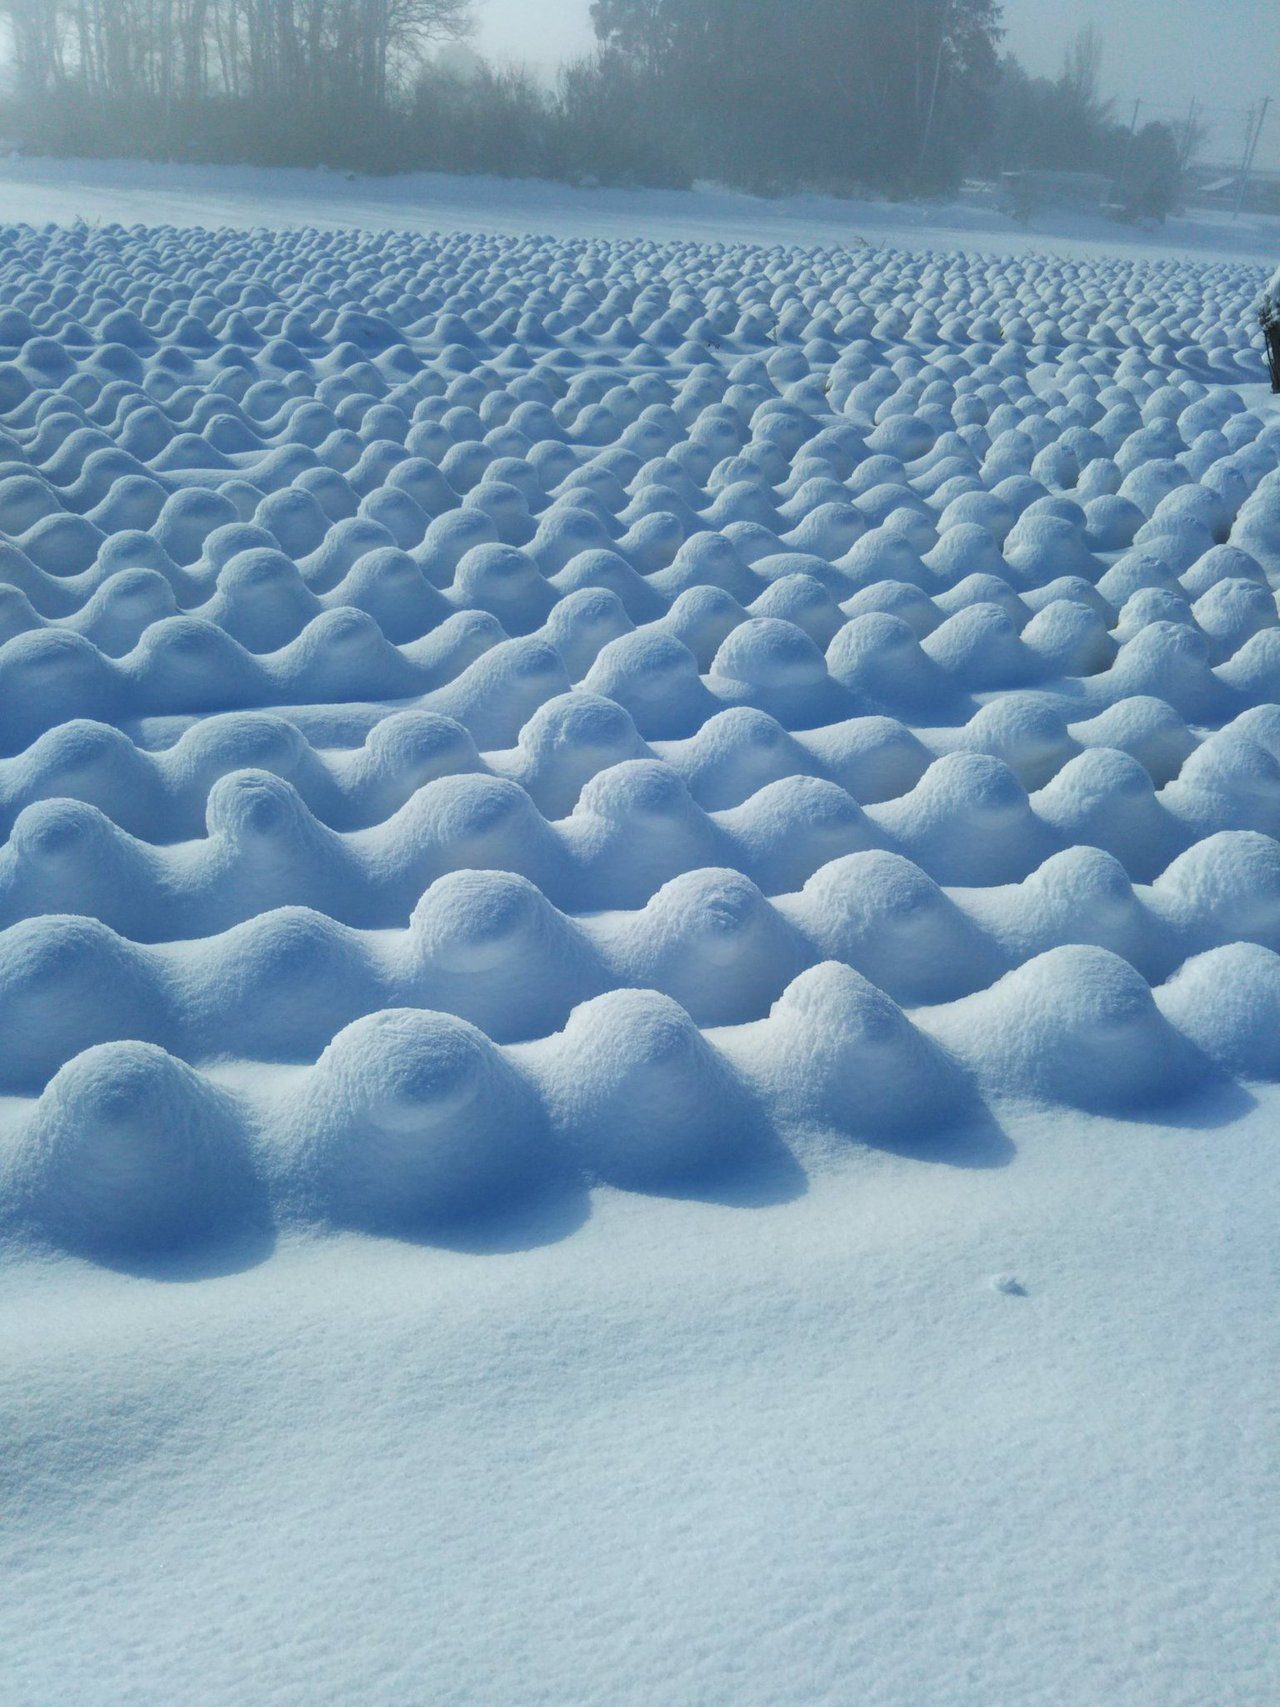 Cabage field under snow